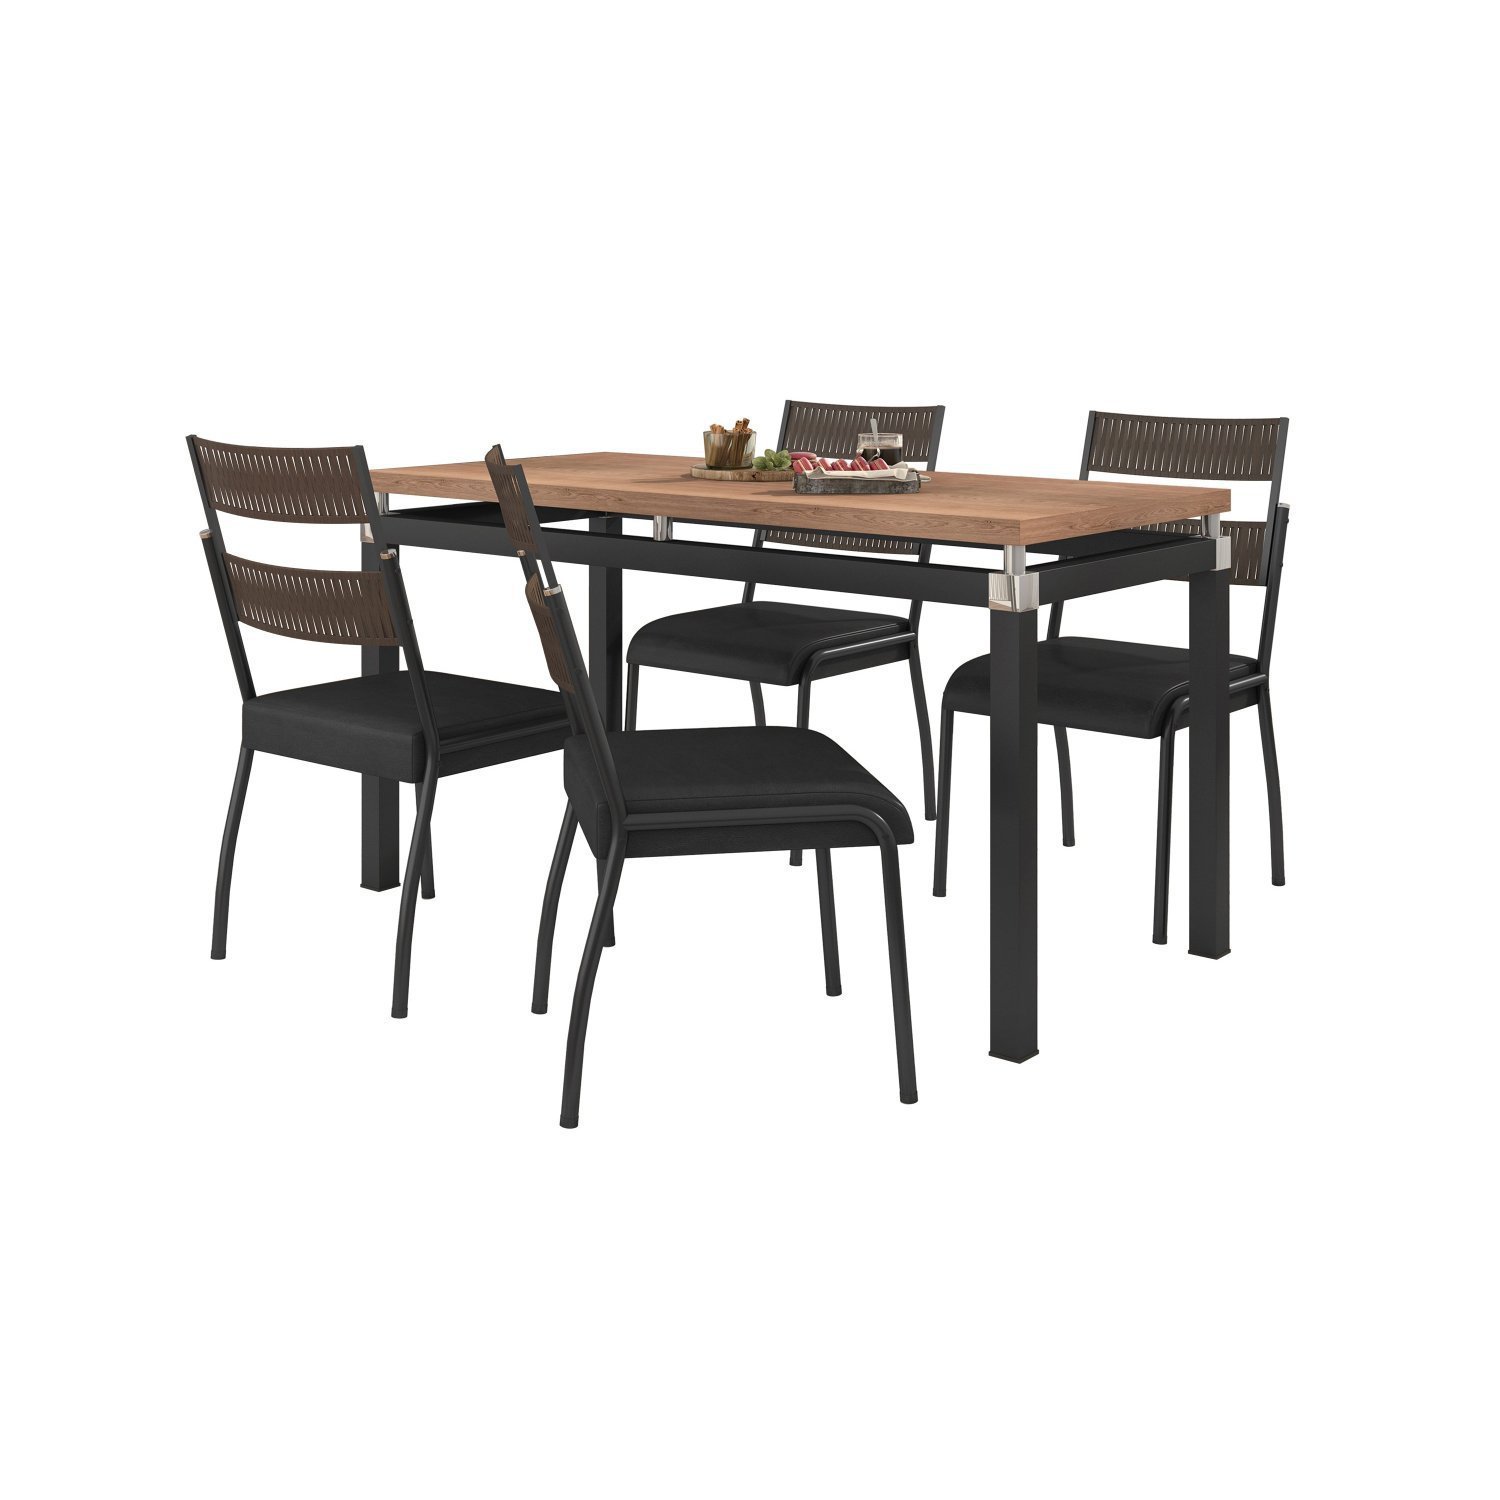 Conjunto Sala de Jantar Tubular Mesa Copenhague com 4 Cadeiras Atenas Fabone Móveis - 2